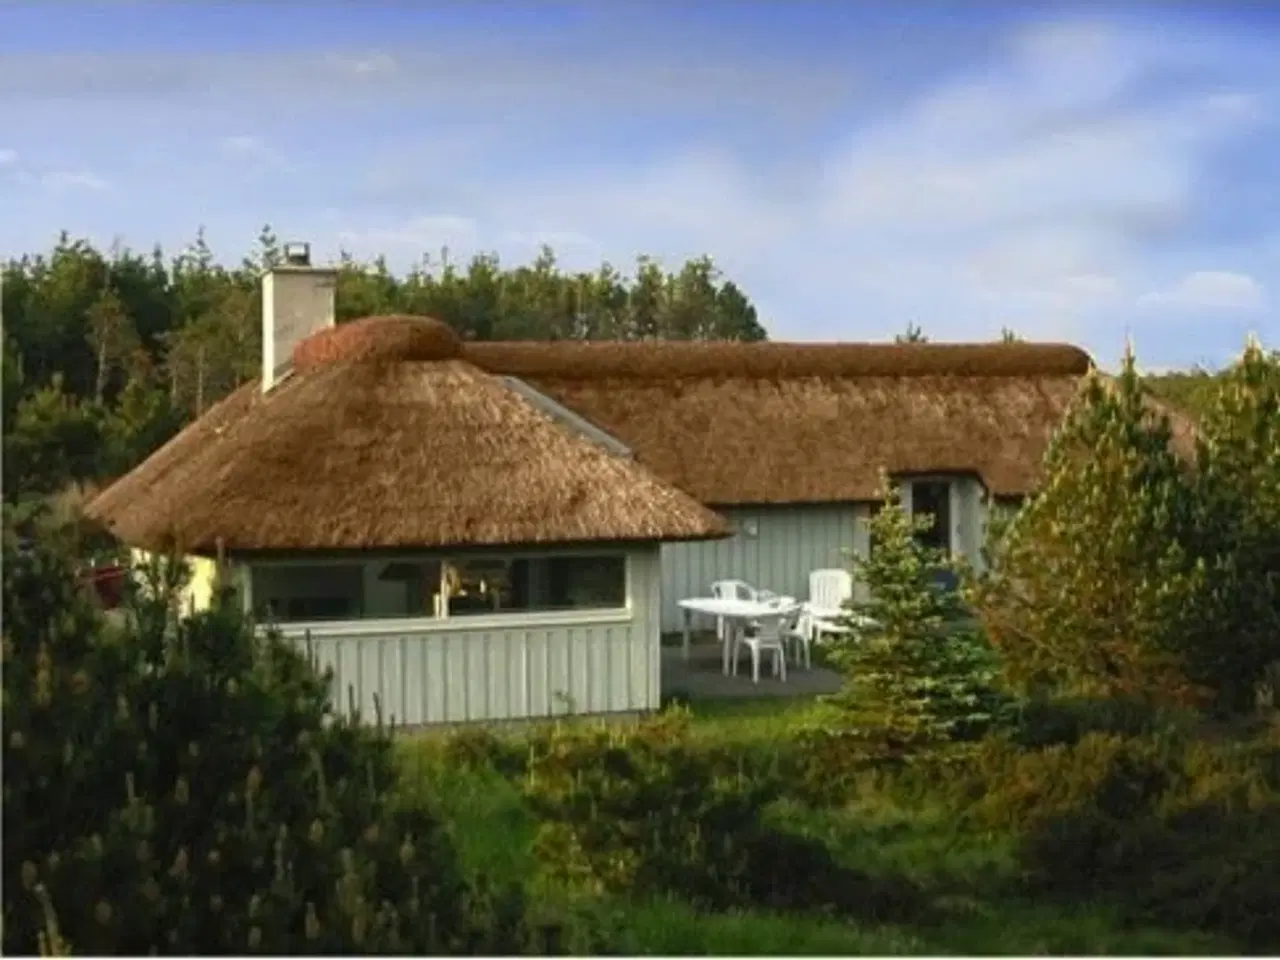 Billede 1 - Luksus sommerhus nær Vesterhavet - Svinkløv luksus feriehus til 8 personer - gratis højhastigheds internet

Slutrengøring er inkluderet i prisen.